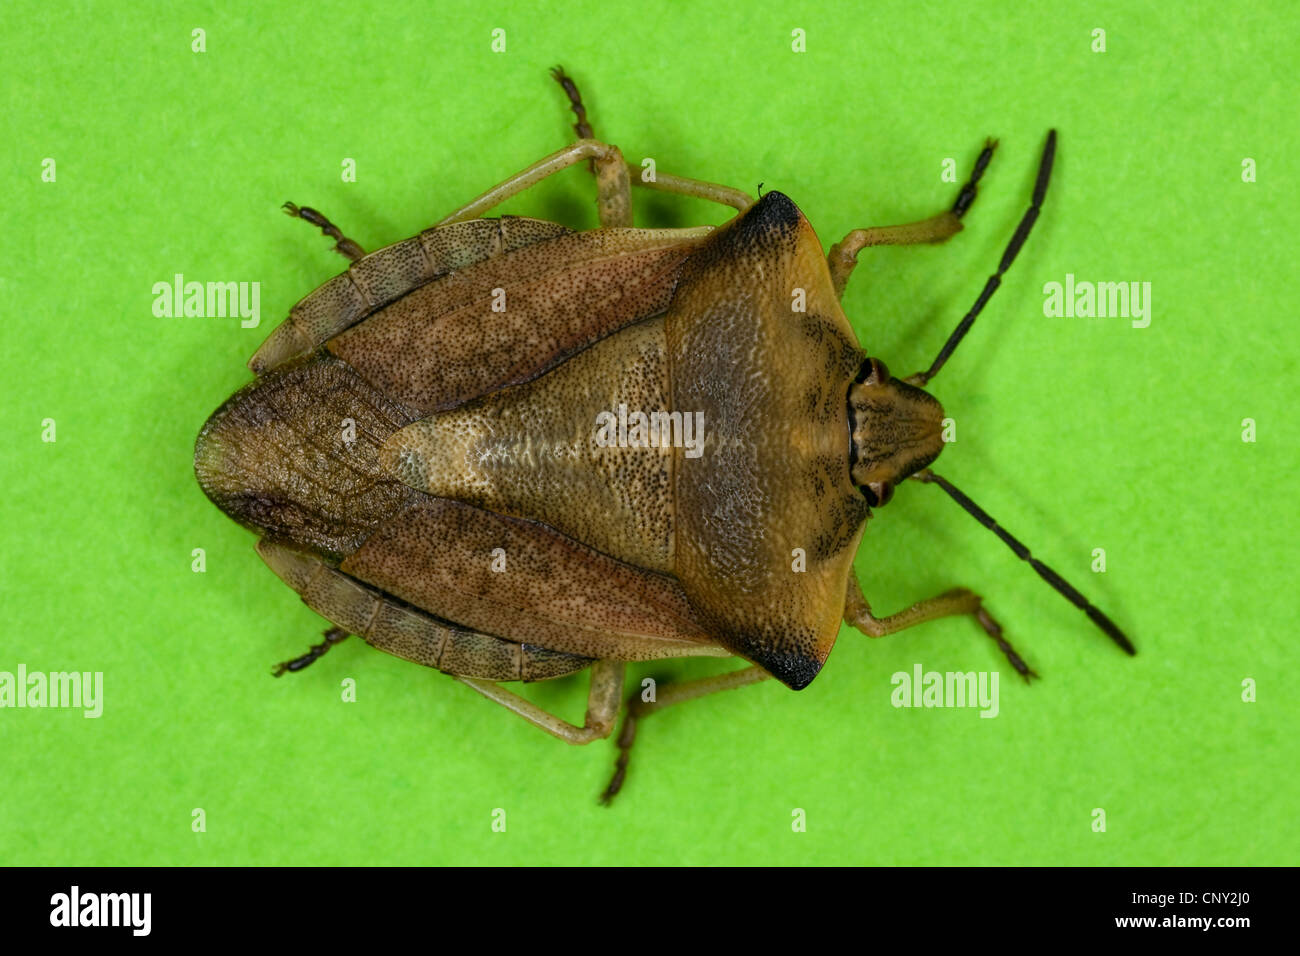 Shield bug (Carpocoris fuscispinus), Germany Stock Photo